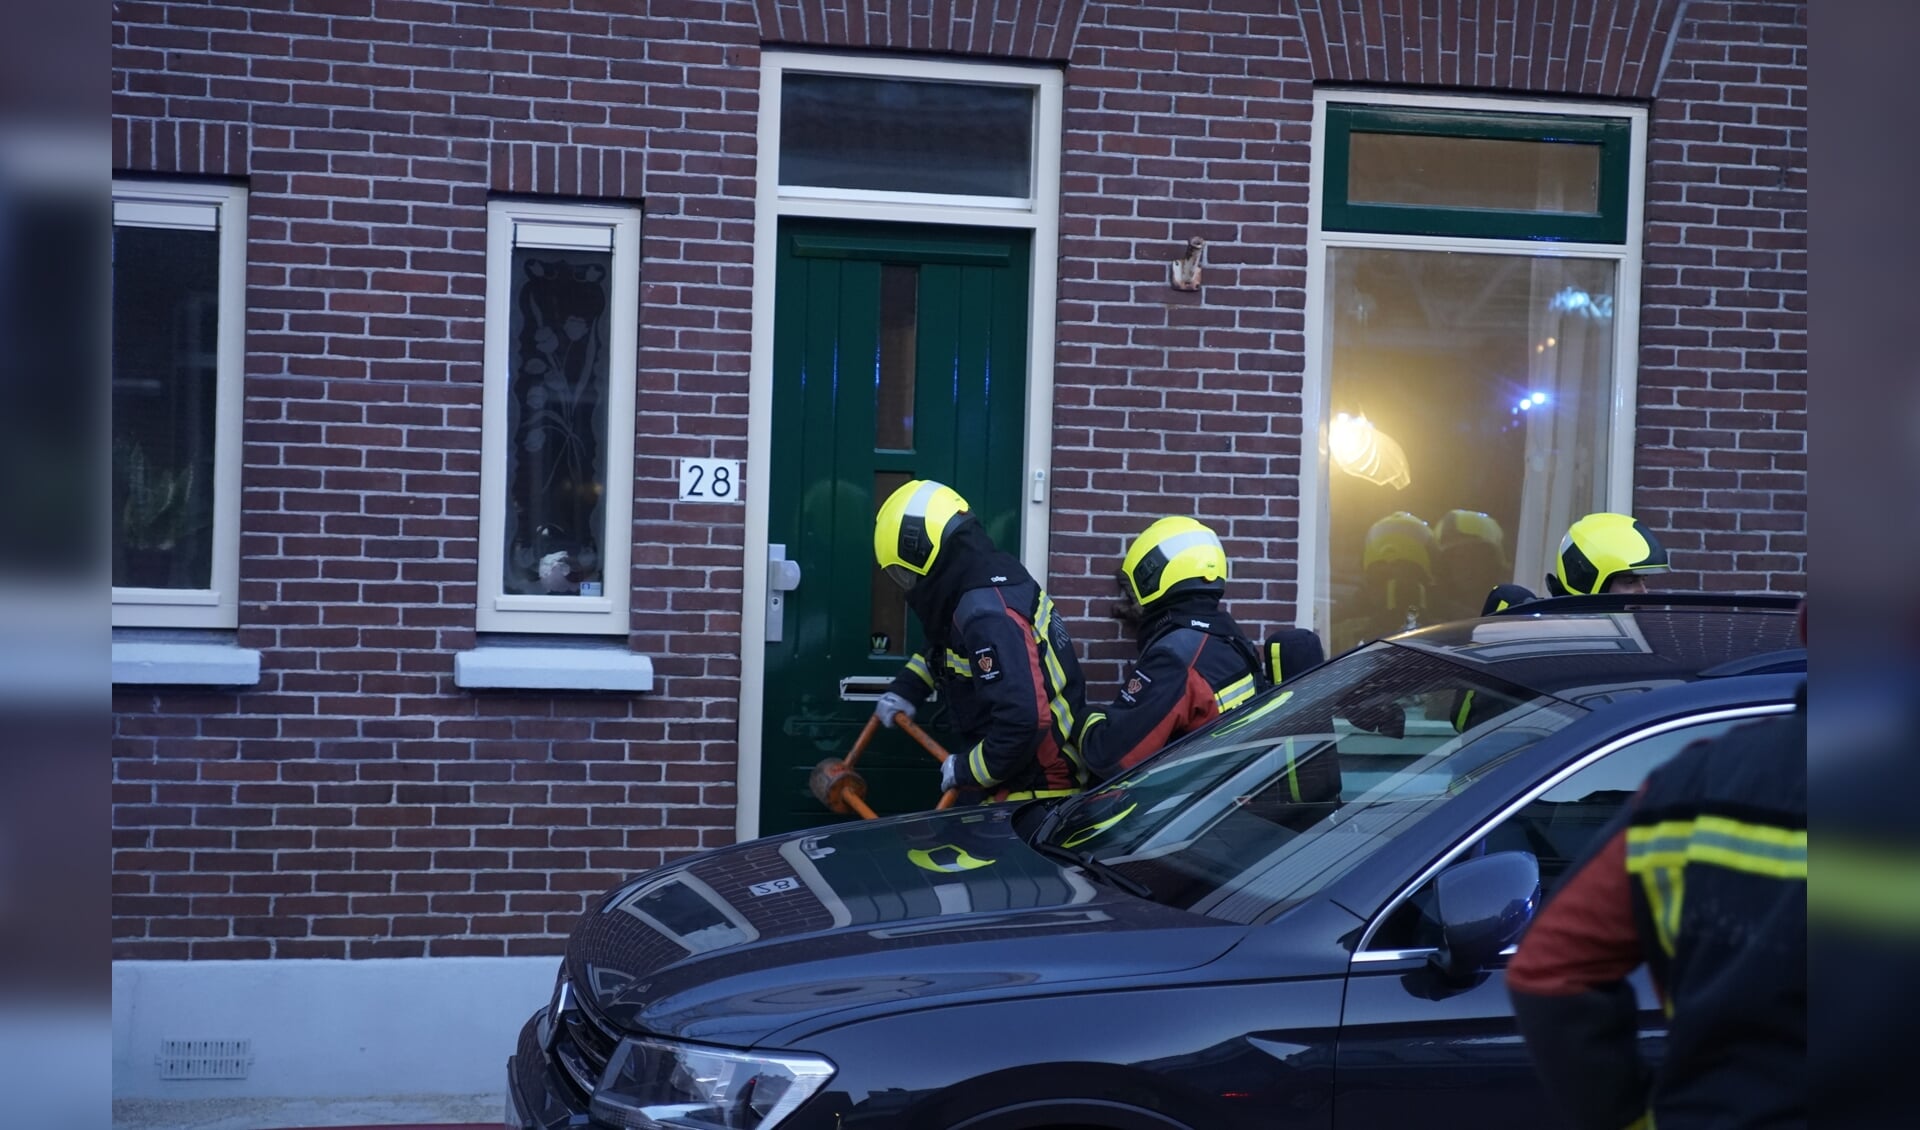 De brandweer moest de voordeur forceren om de slapende bewoner te redden.